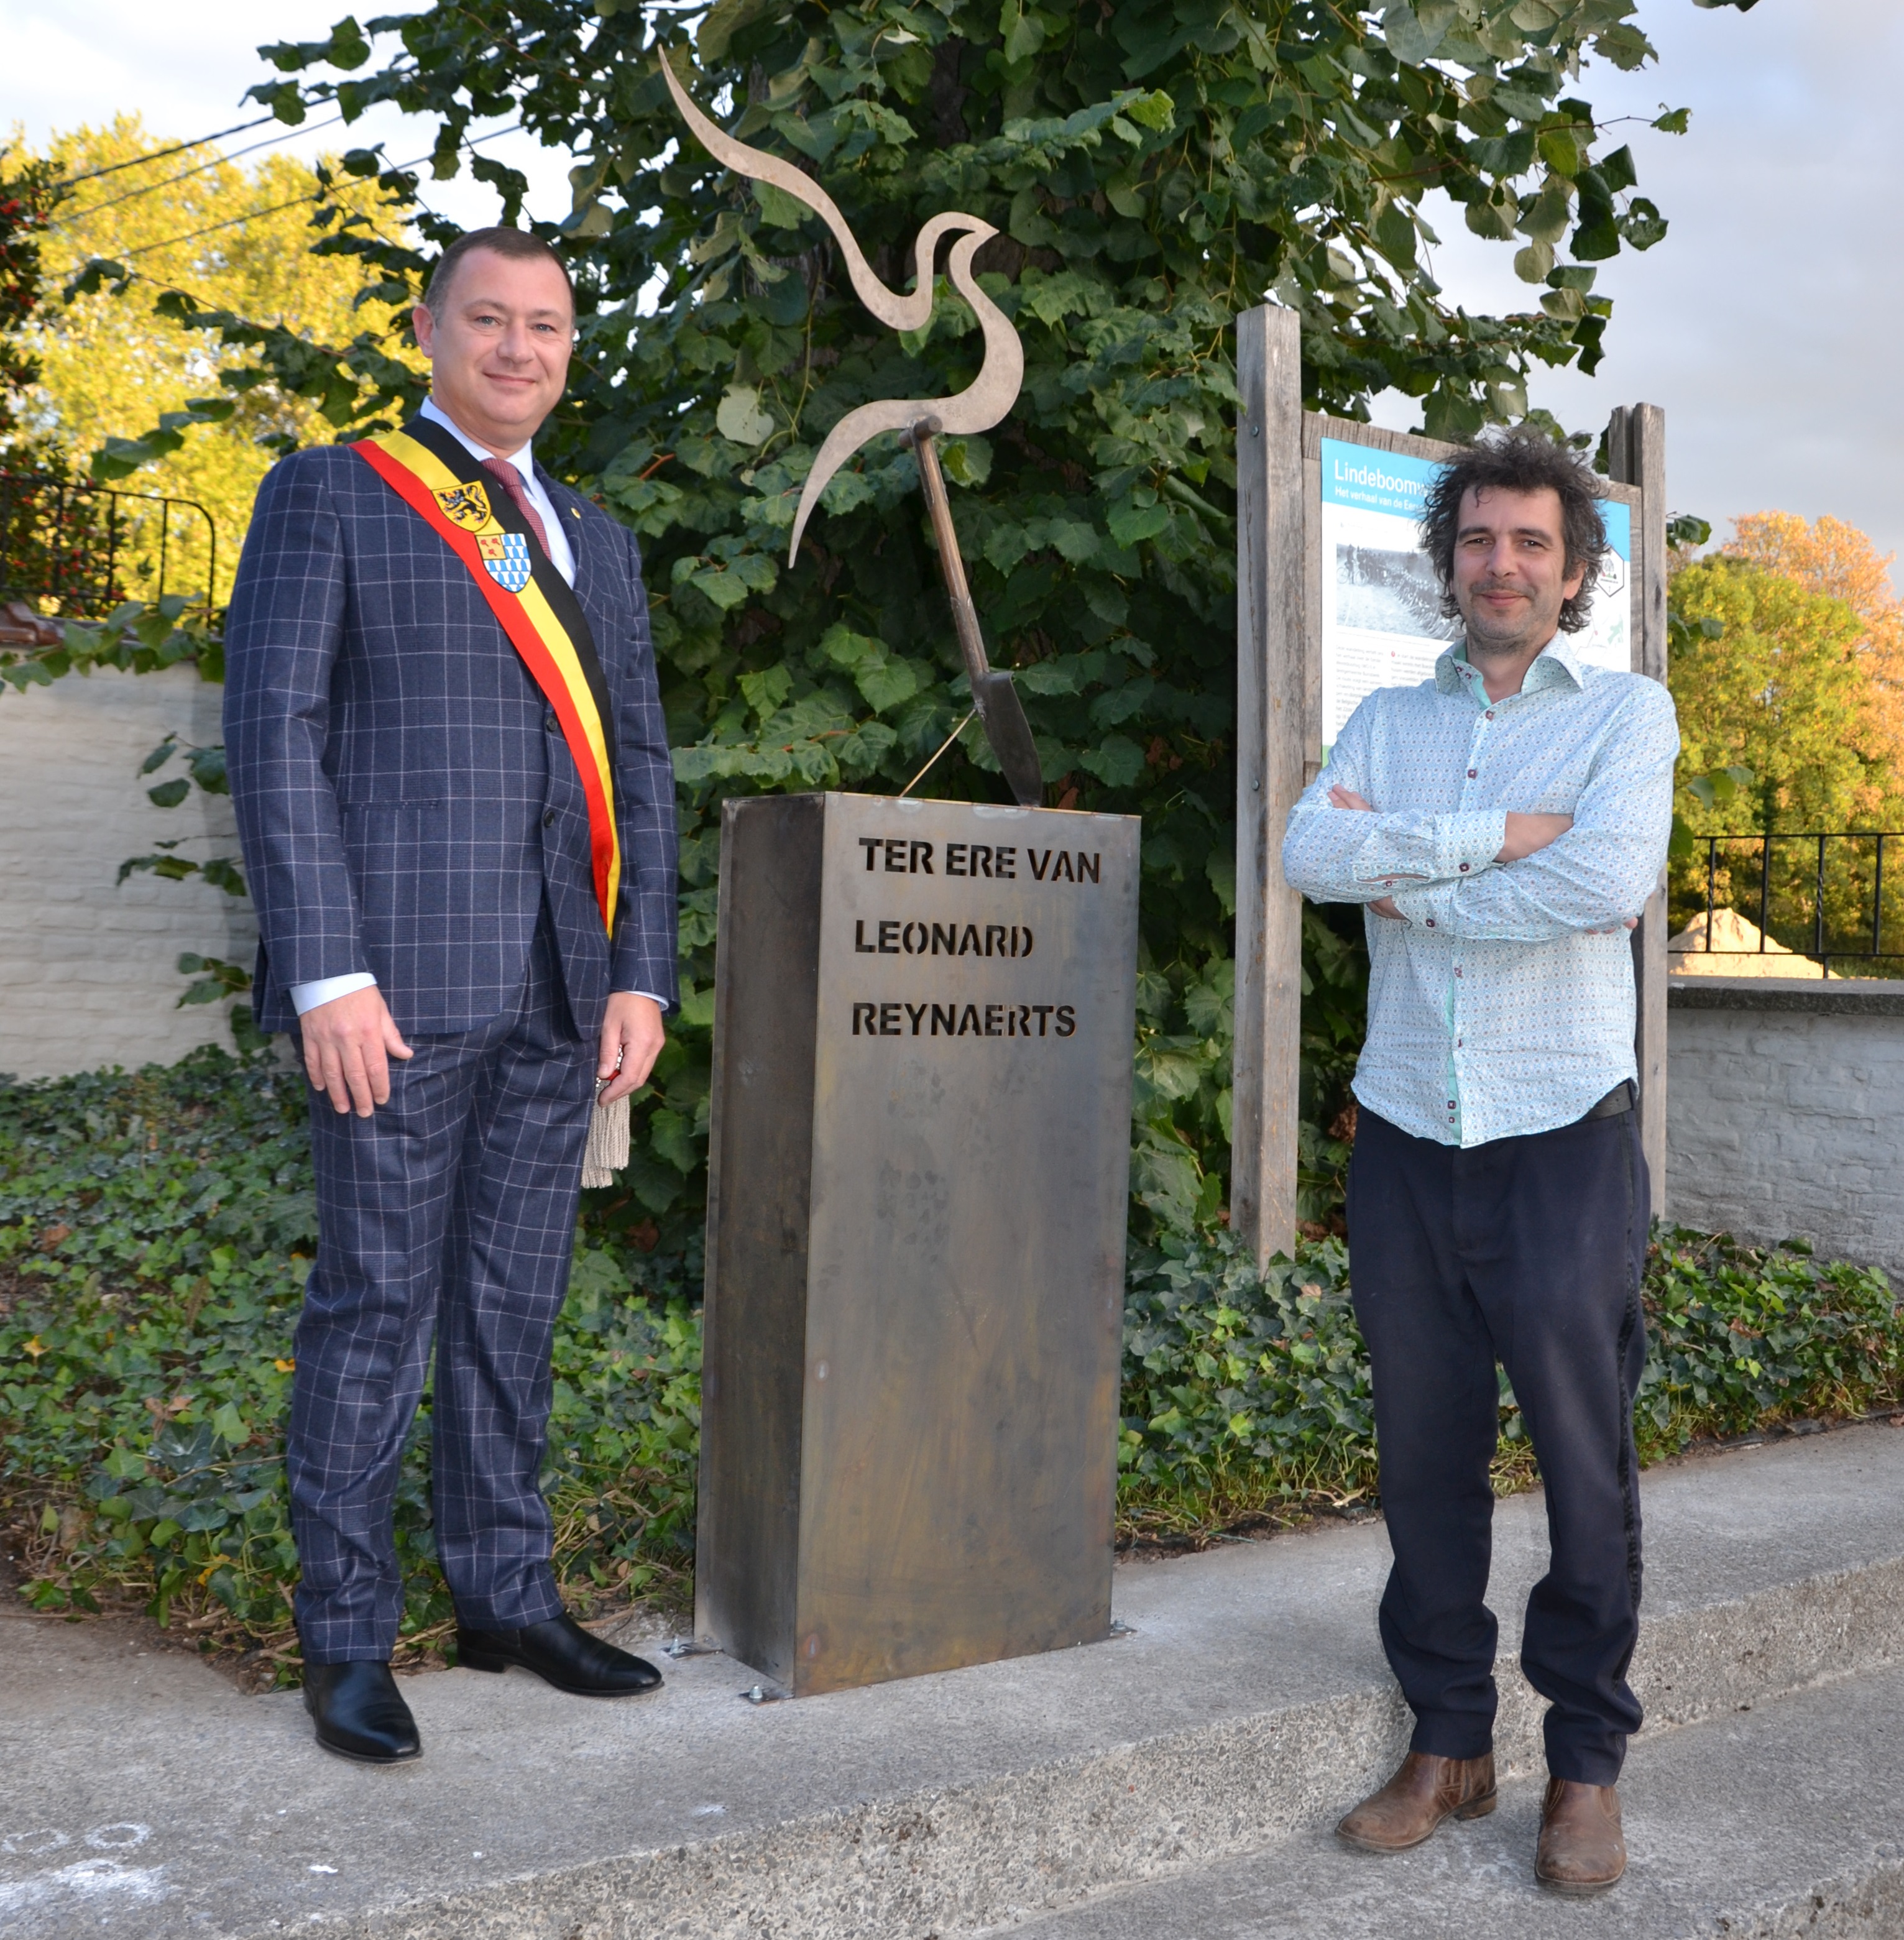 Inhuldiging van het monument ter ere van Leonard Reynaerts aan de pastorij in Bunsbeek dat kunstenaar Frederik Vaes in opdracht van de gemeente maakte in 2018